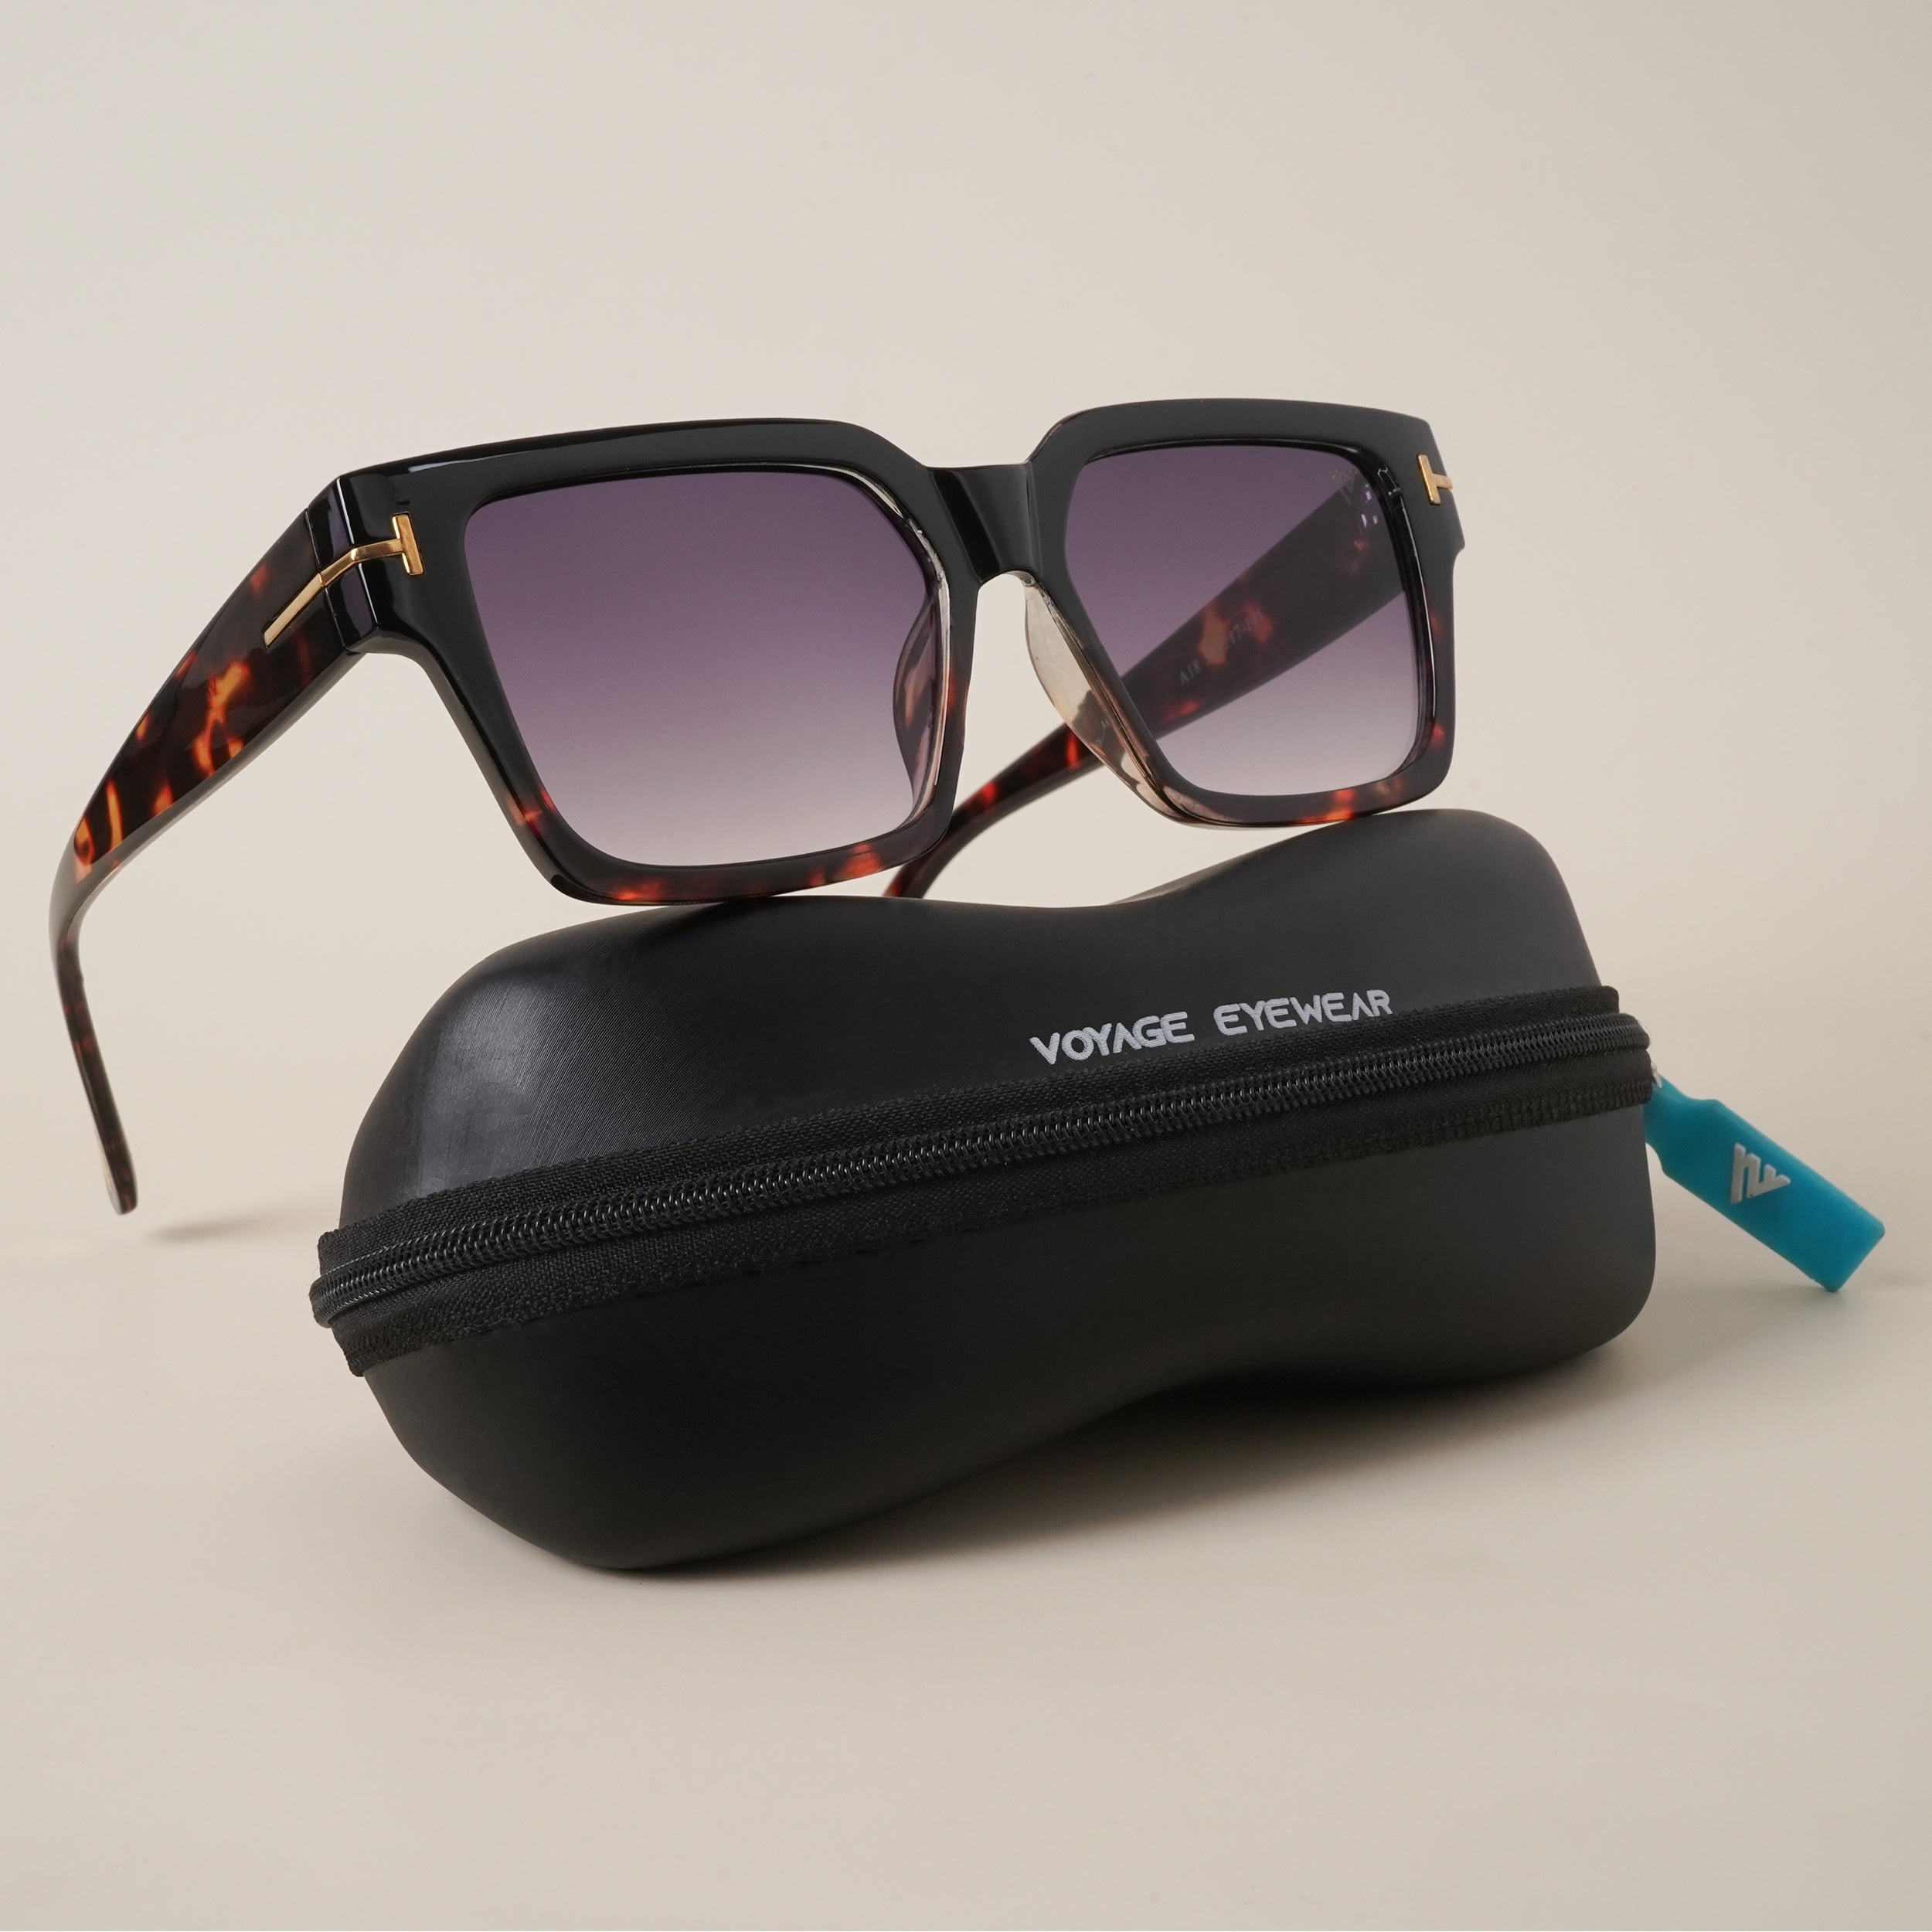 Voyage Black Wayfarer Sunglasses for Men & Women (A18MG3950)